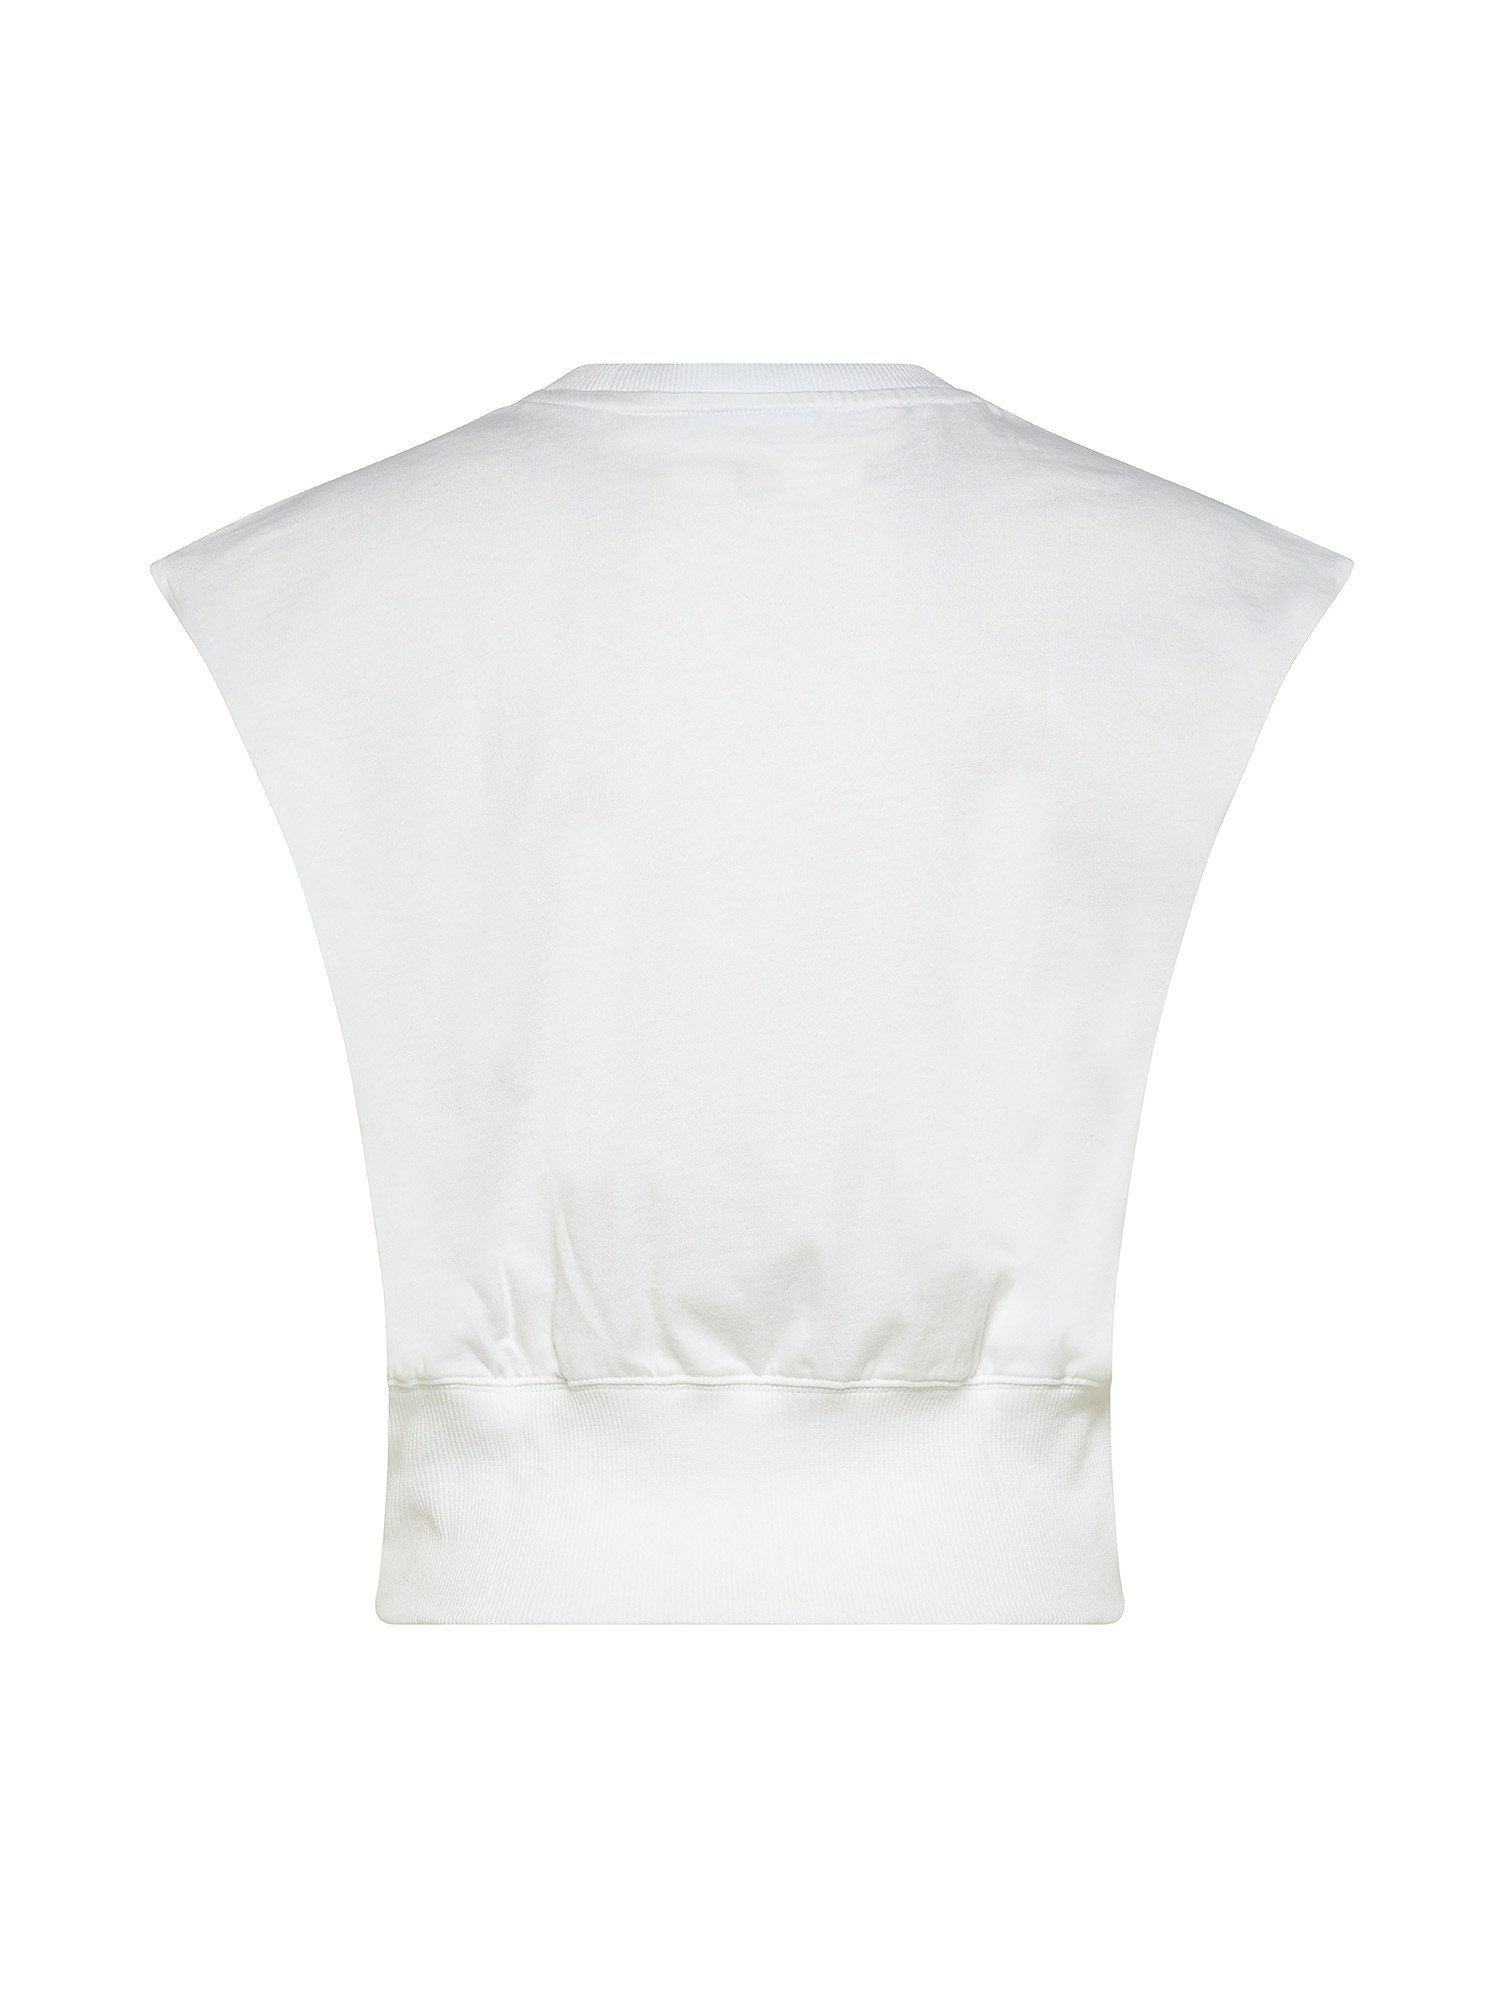 Adidas - Adicolor T-shirt with logo, White, large image number 1